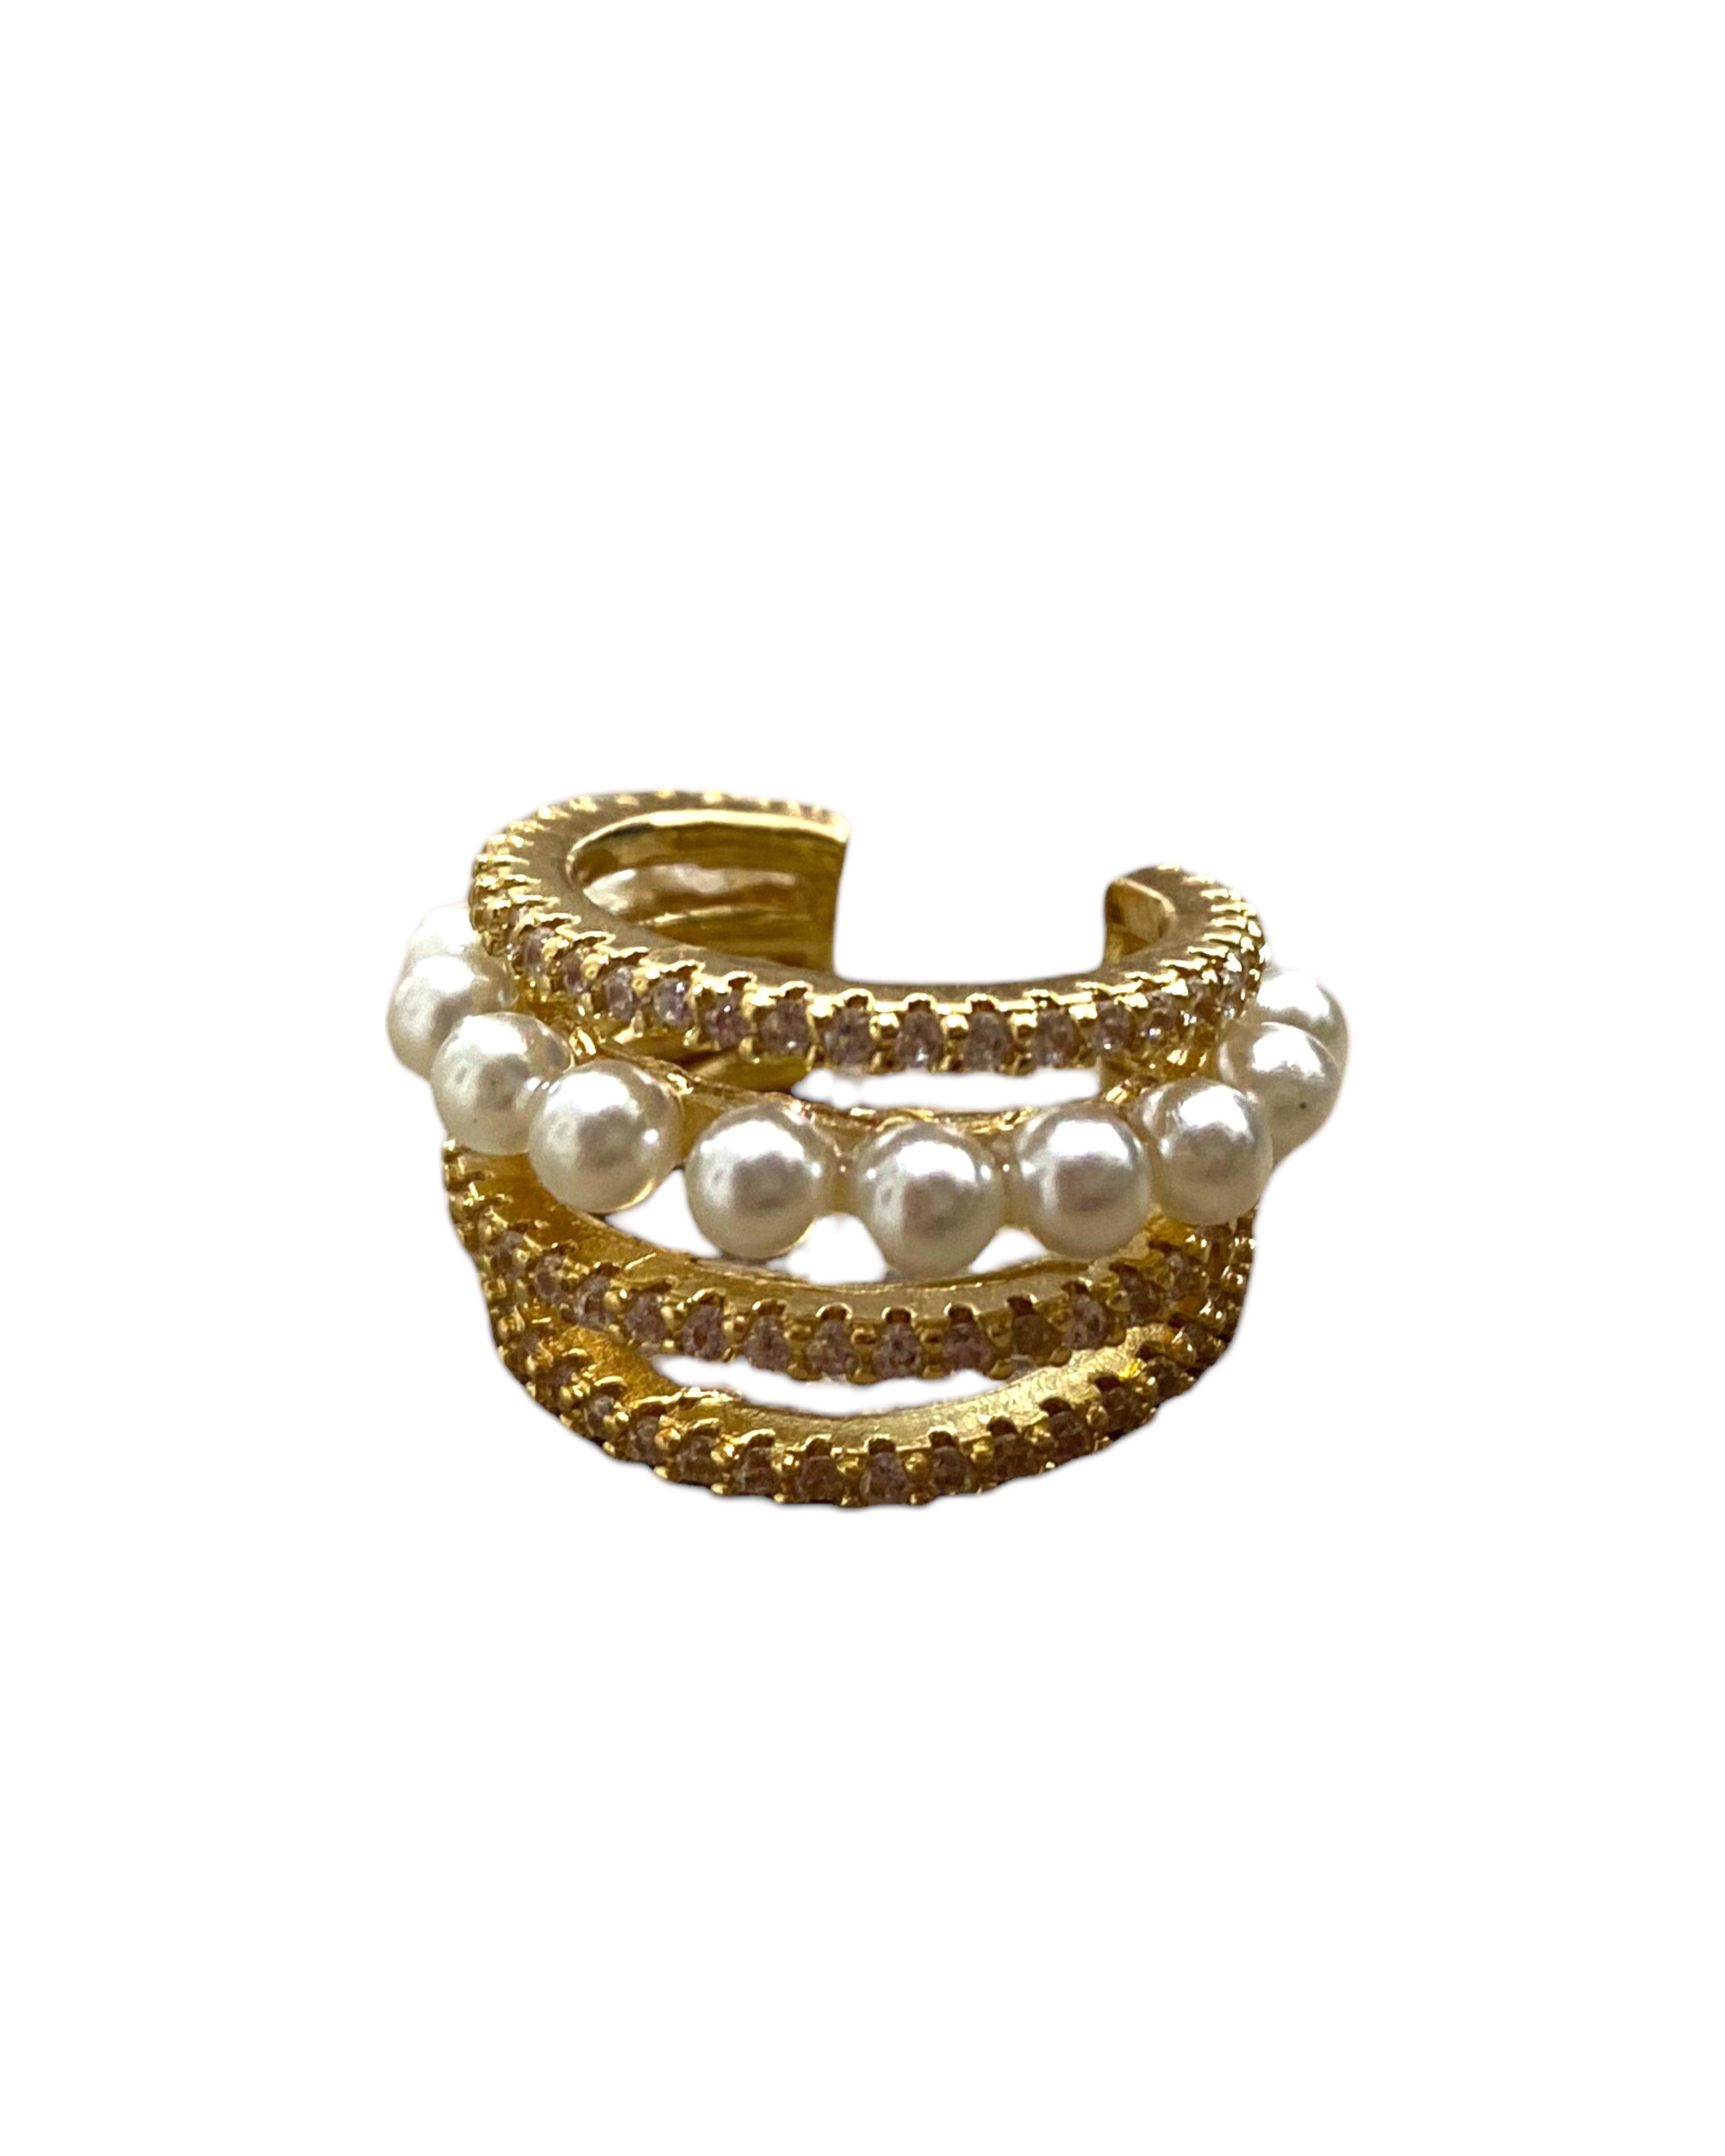 Ear Cuff con Perlas en Chapa de Oro